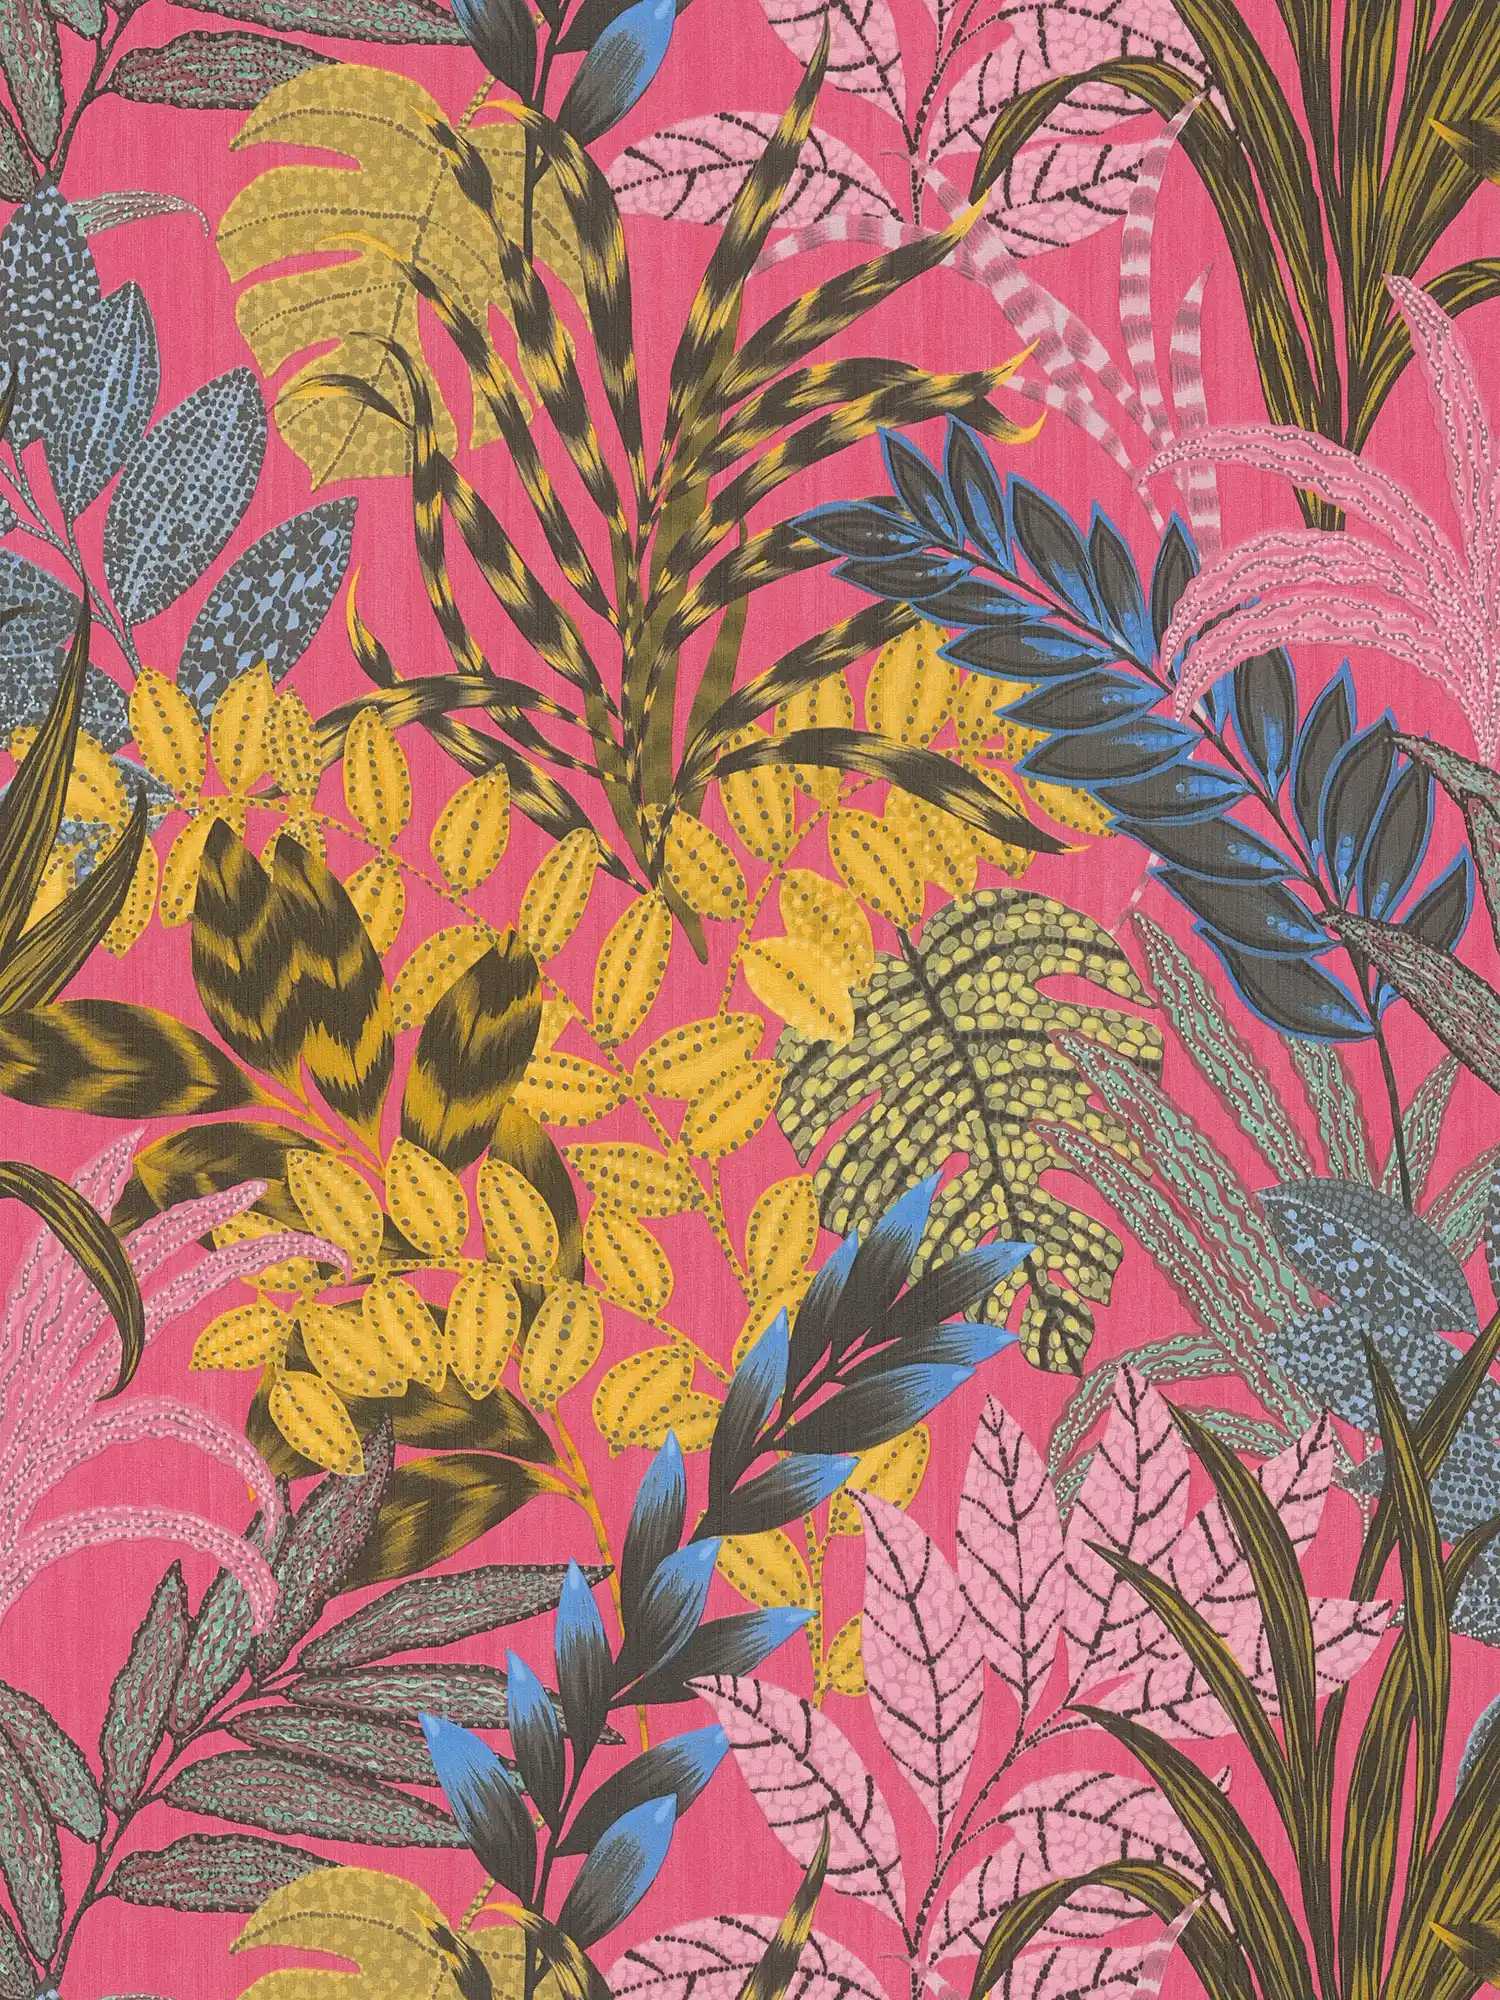 Carta da parati colorata in tessuto non tessuto con motivo a foglie e struttura in rilievo - multicolore, giallo, rosa
